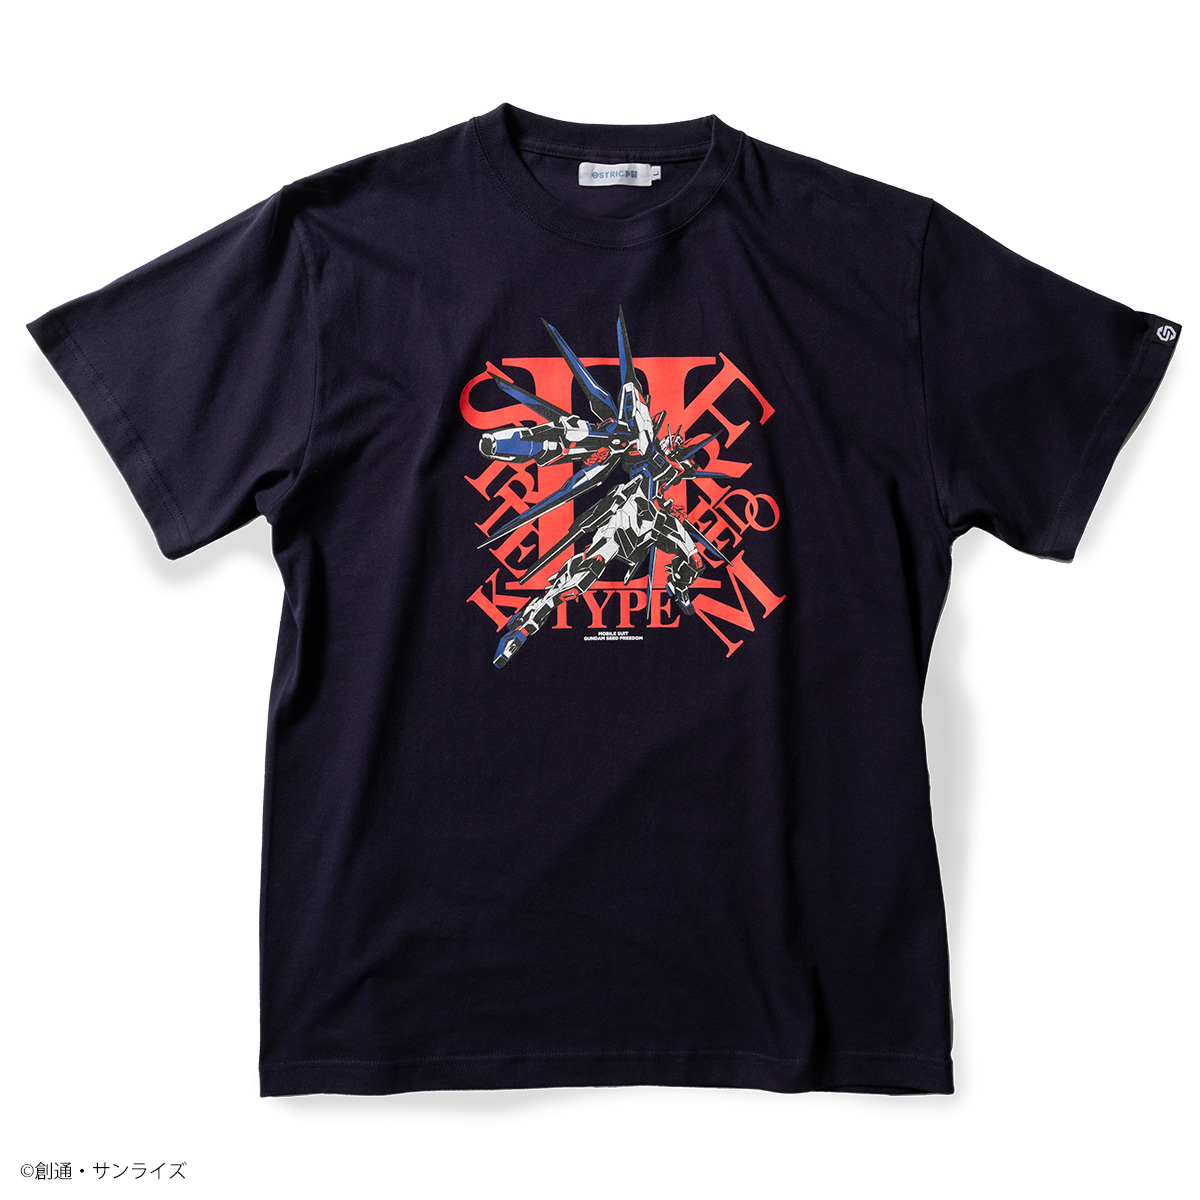 『機動戦士ガンダムSEED FREEDOM』より MS(モビルスーツ)デザインの新作Tシャツが登場!